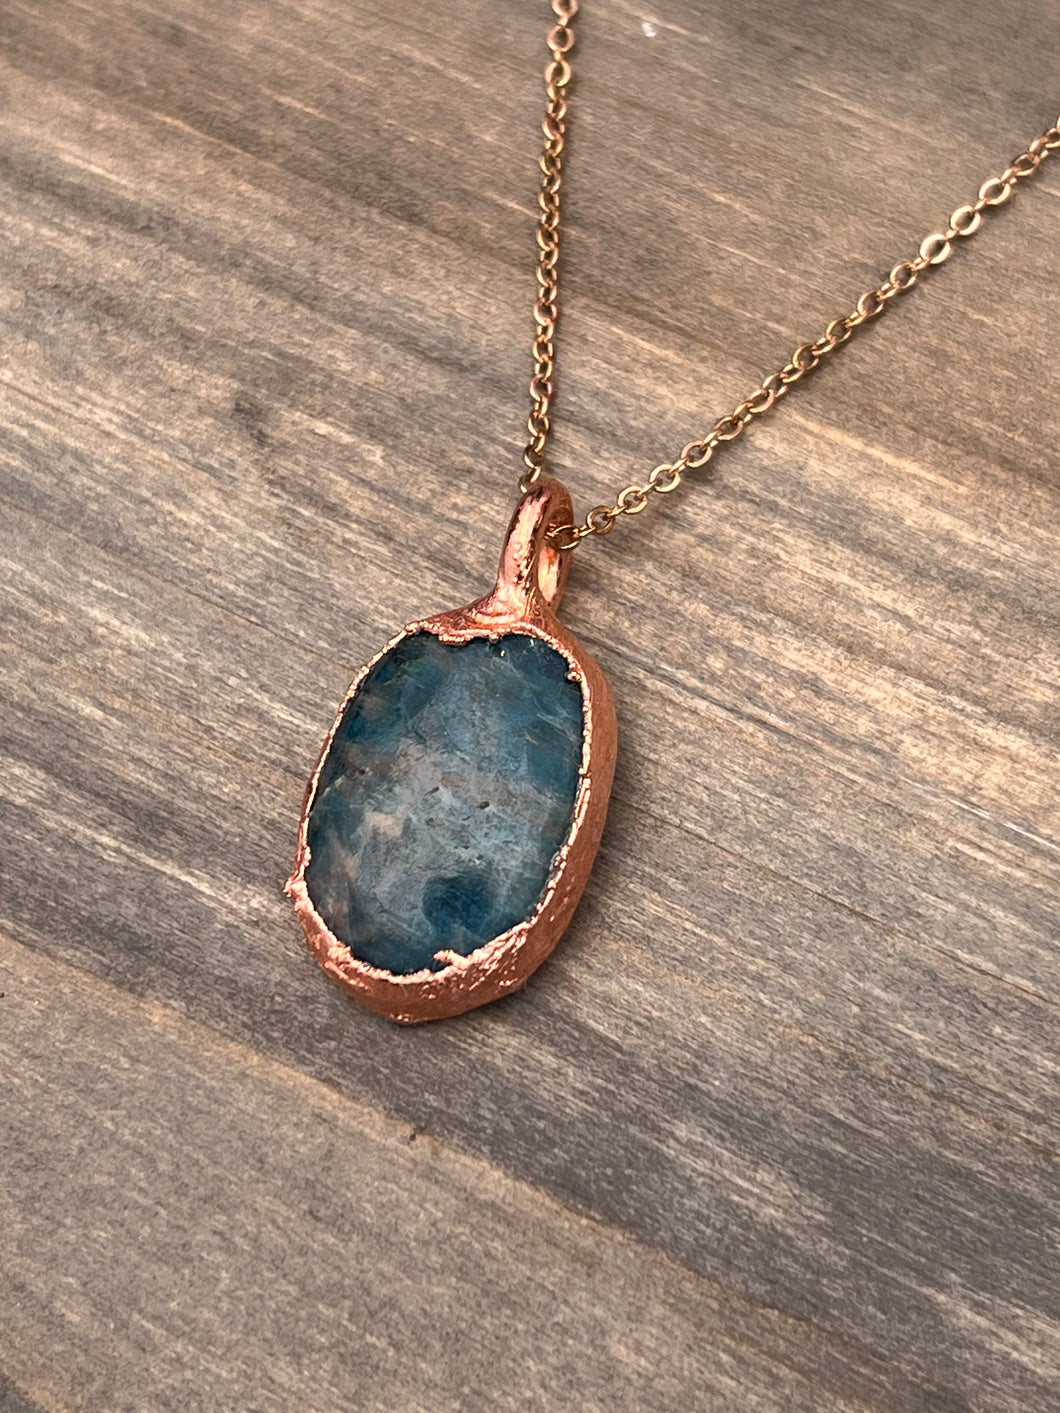 Blue Apatite necklace